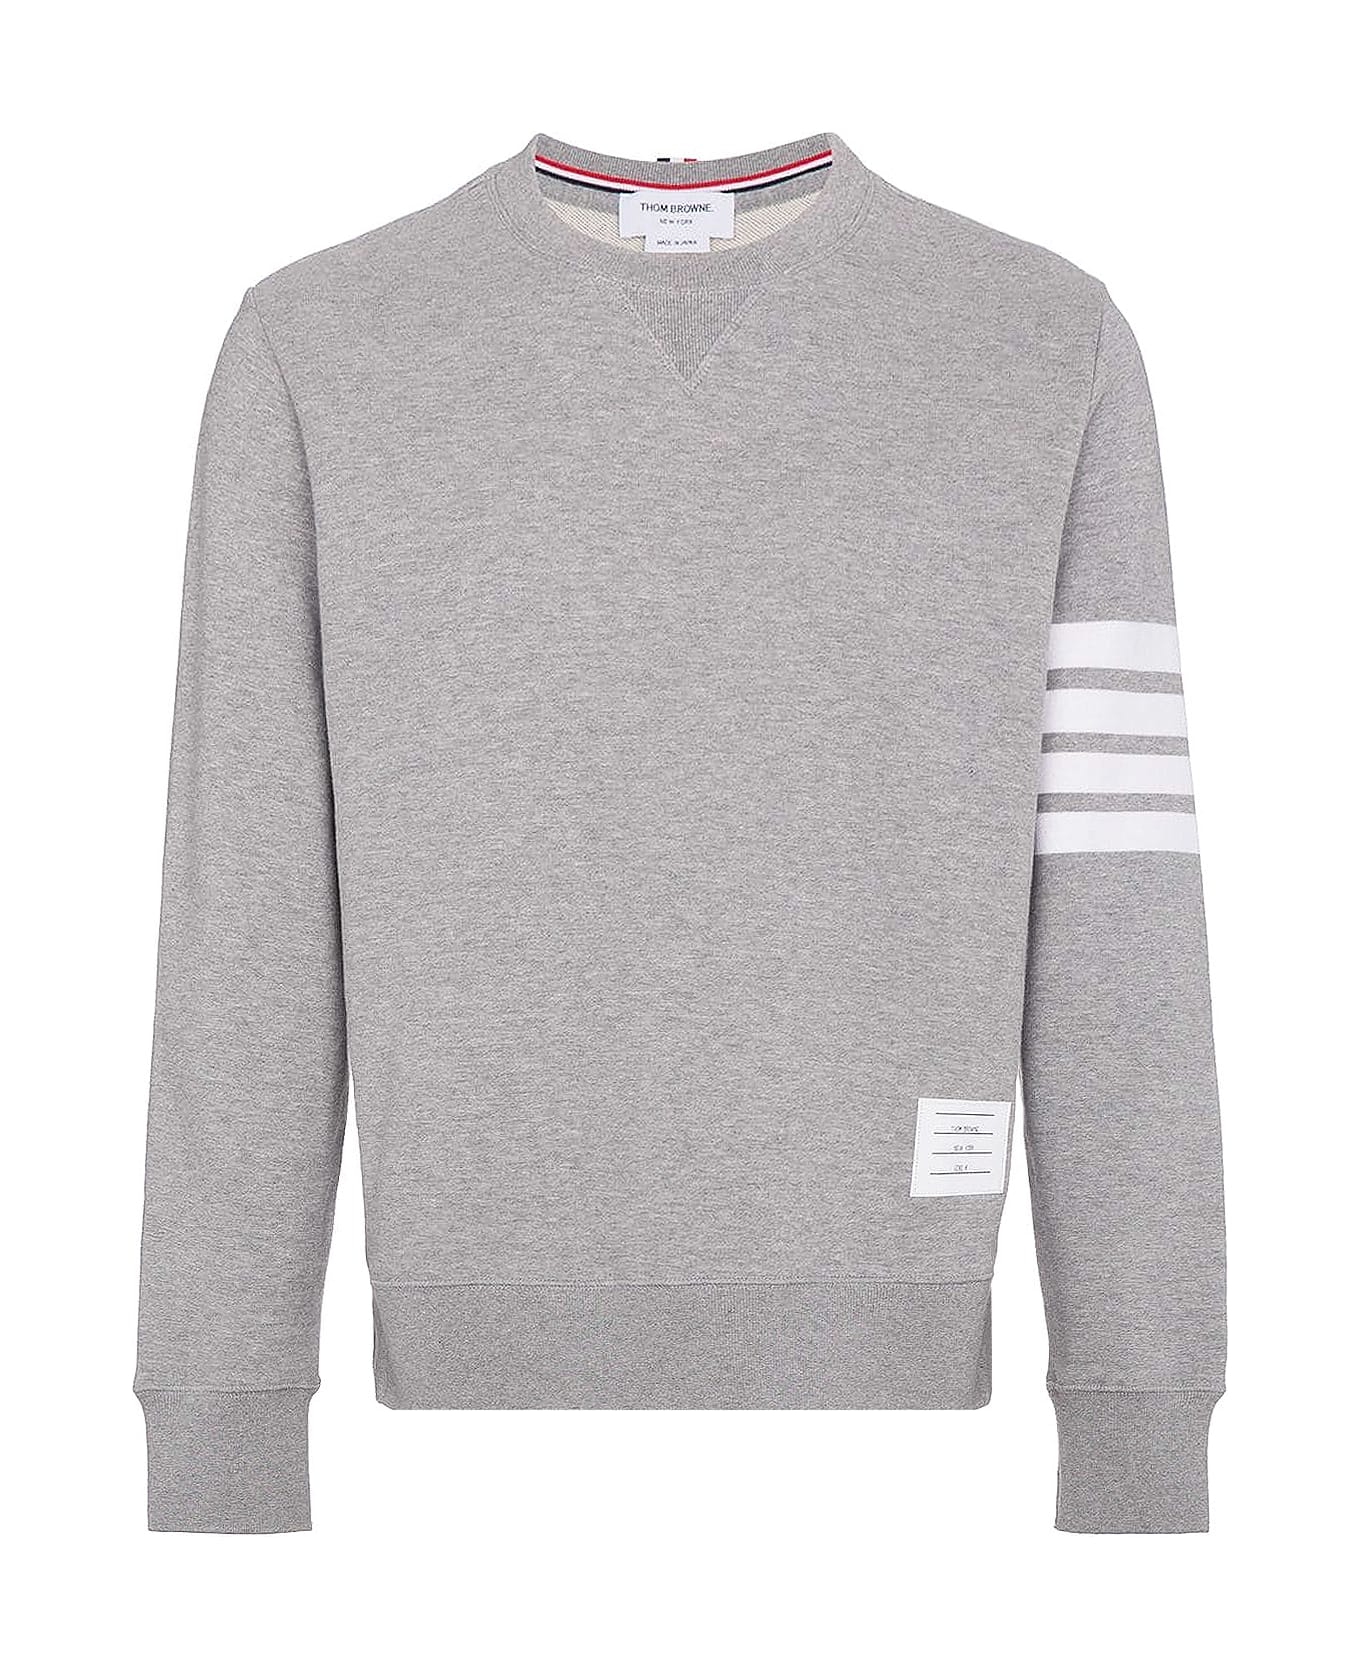 Thom Browne Grey '4-bar' Sweatshirt - Light grey フリース